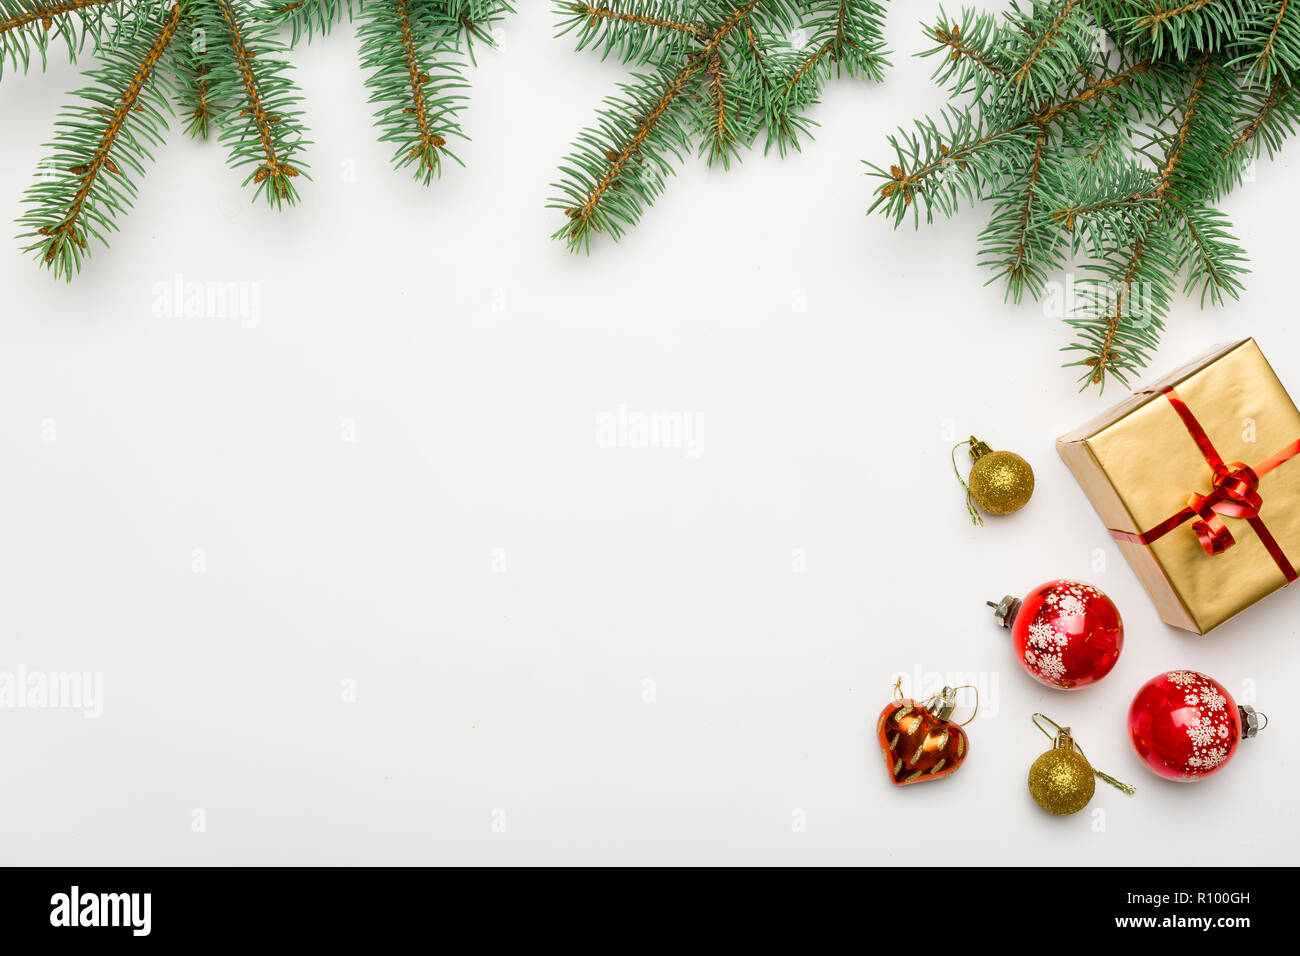 Khung dép trang trí Giáng sinh trên nền trắng sẽ mang đến cho bạn sự trang trí tuyệt vời cho nhà của bạn trong mùa Giáng sinh. Hãy để hình ảnh này đem đến cho bạn niềm vui khi trang trí nhà cửa cho mùa lễ hội này.